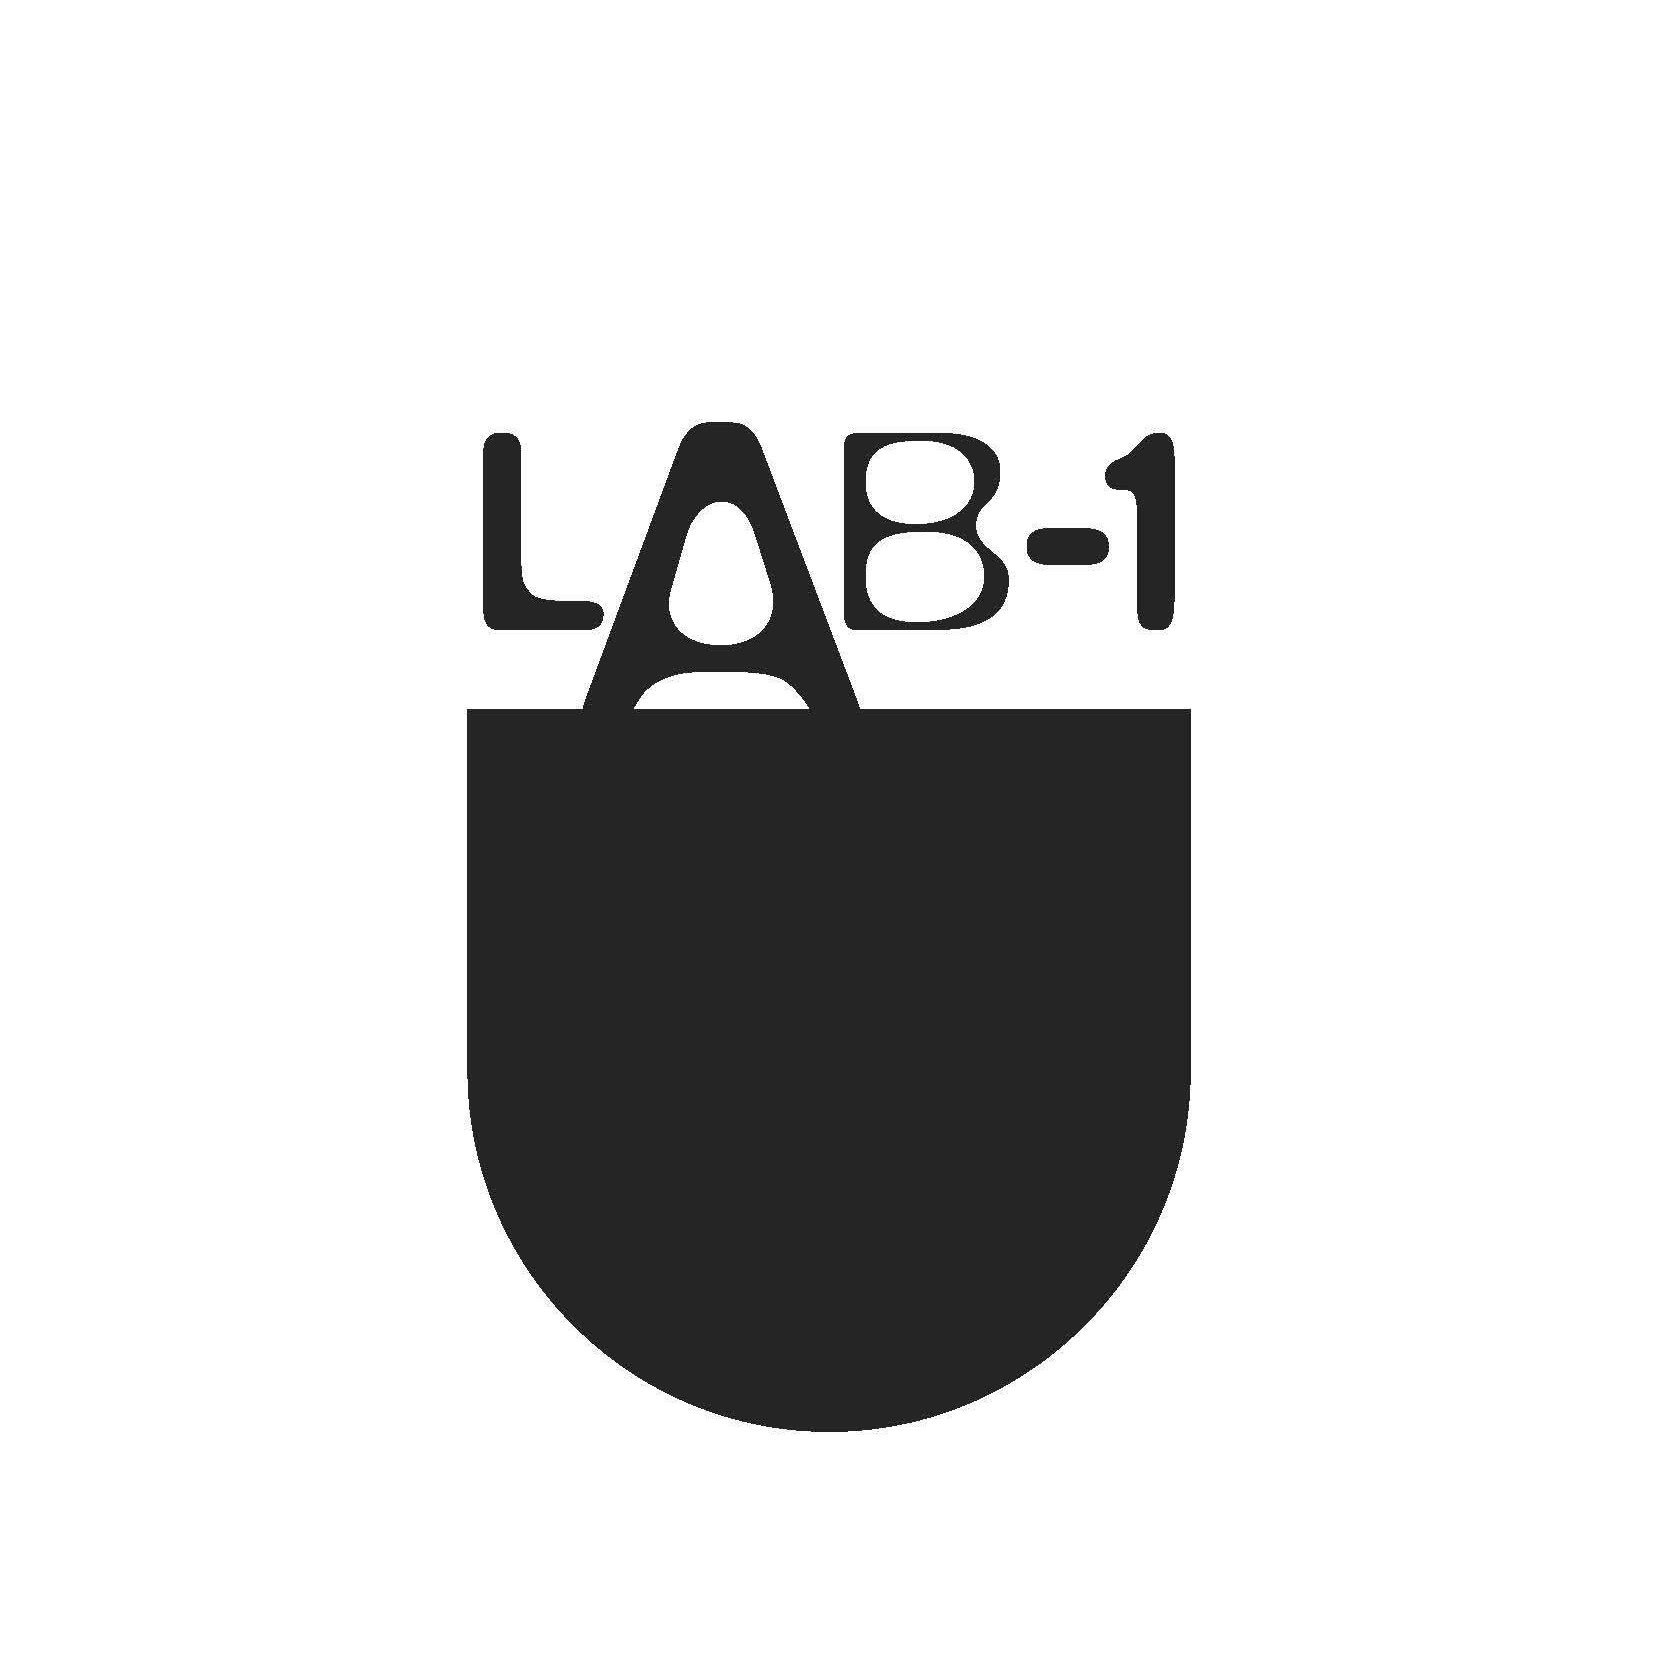 LAB-1